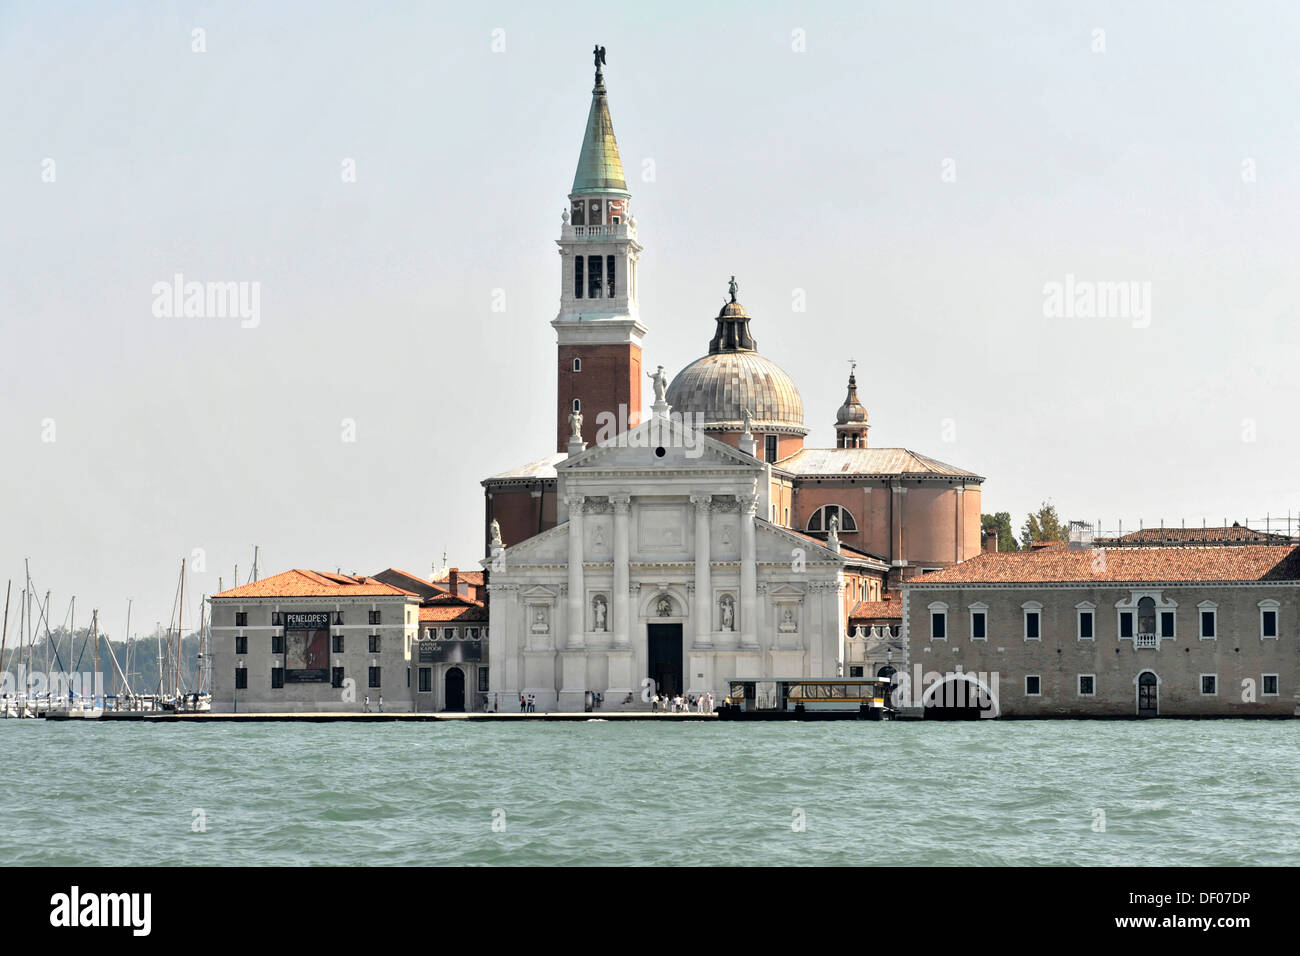 L'île de San Giorgio Maggiore, construit par Andrea Palladio en 1565, l'UNESCO World Heritage site, Venise, Vénétie, Italie, Europe Banque D'Images